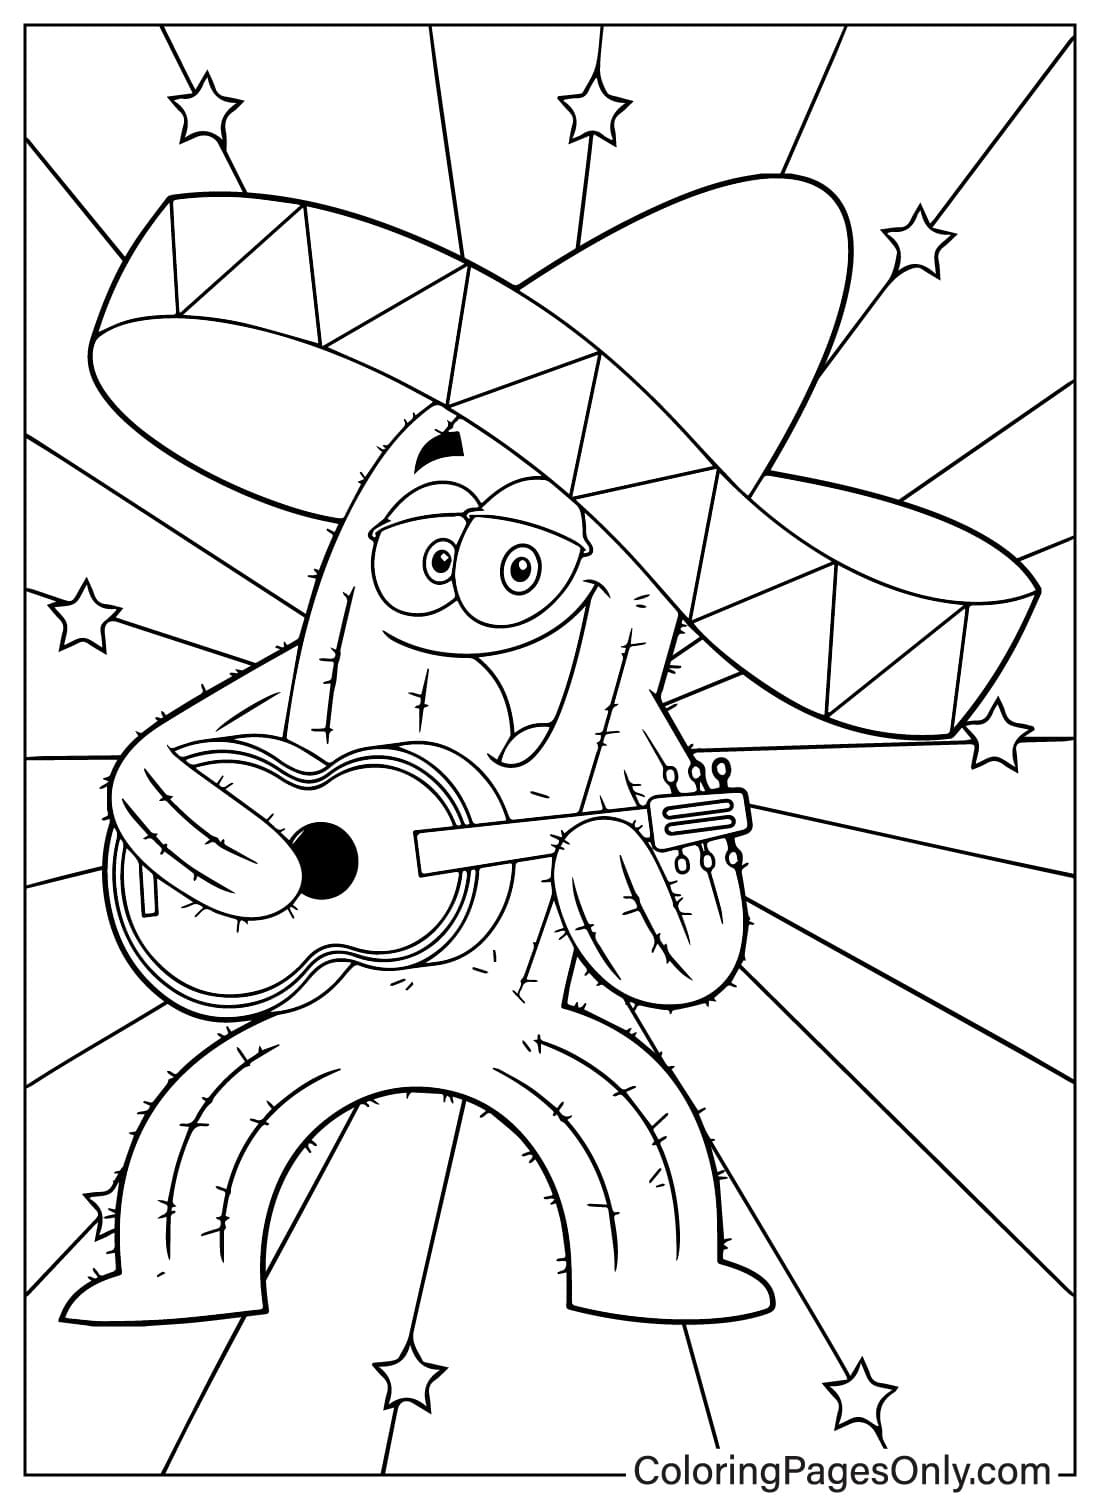 Felice personaggio dei cartoni animati messicano Cactus che canta e suona una chitarra da Cinco De Mayo